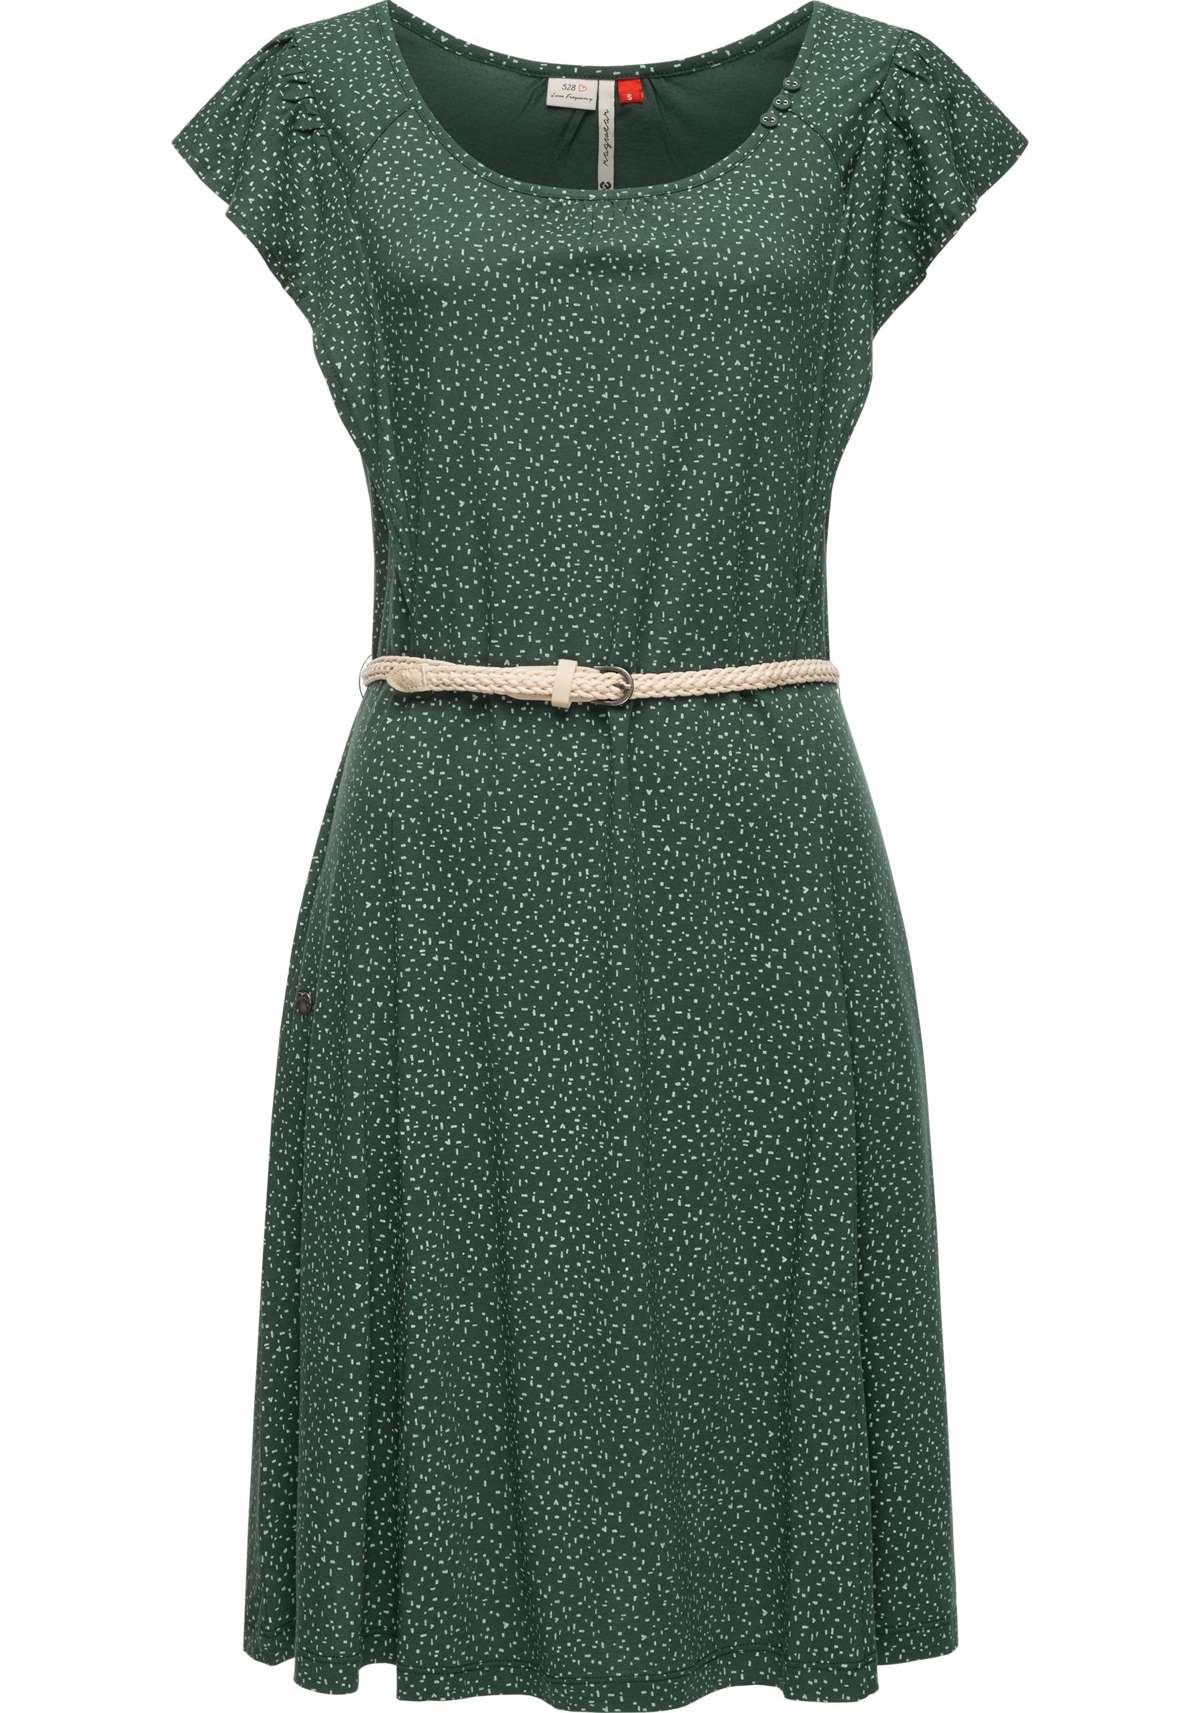 Платье-рубашка, стильное летнее платье с принтом и качественным поясом.